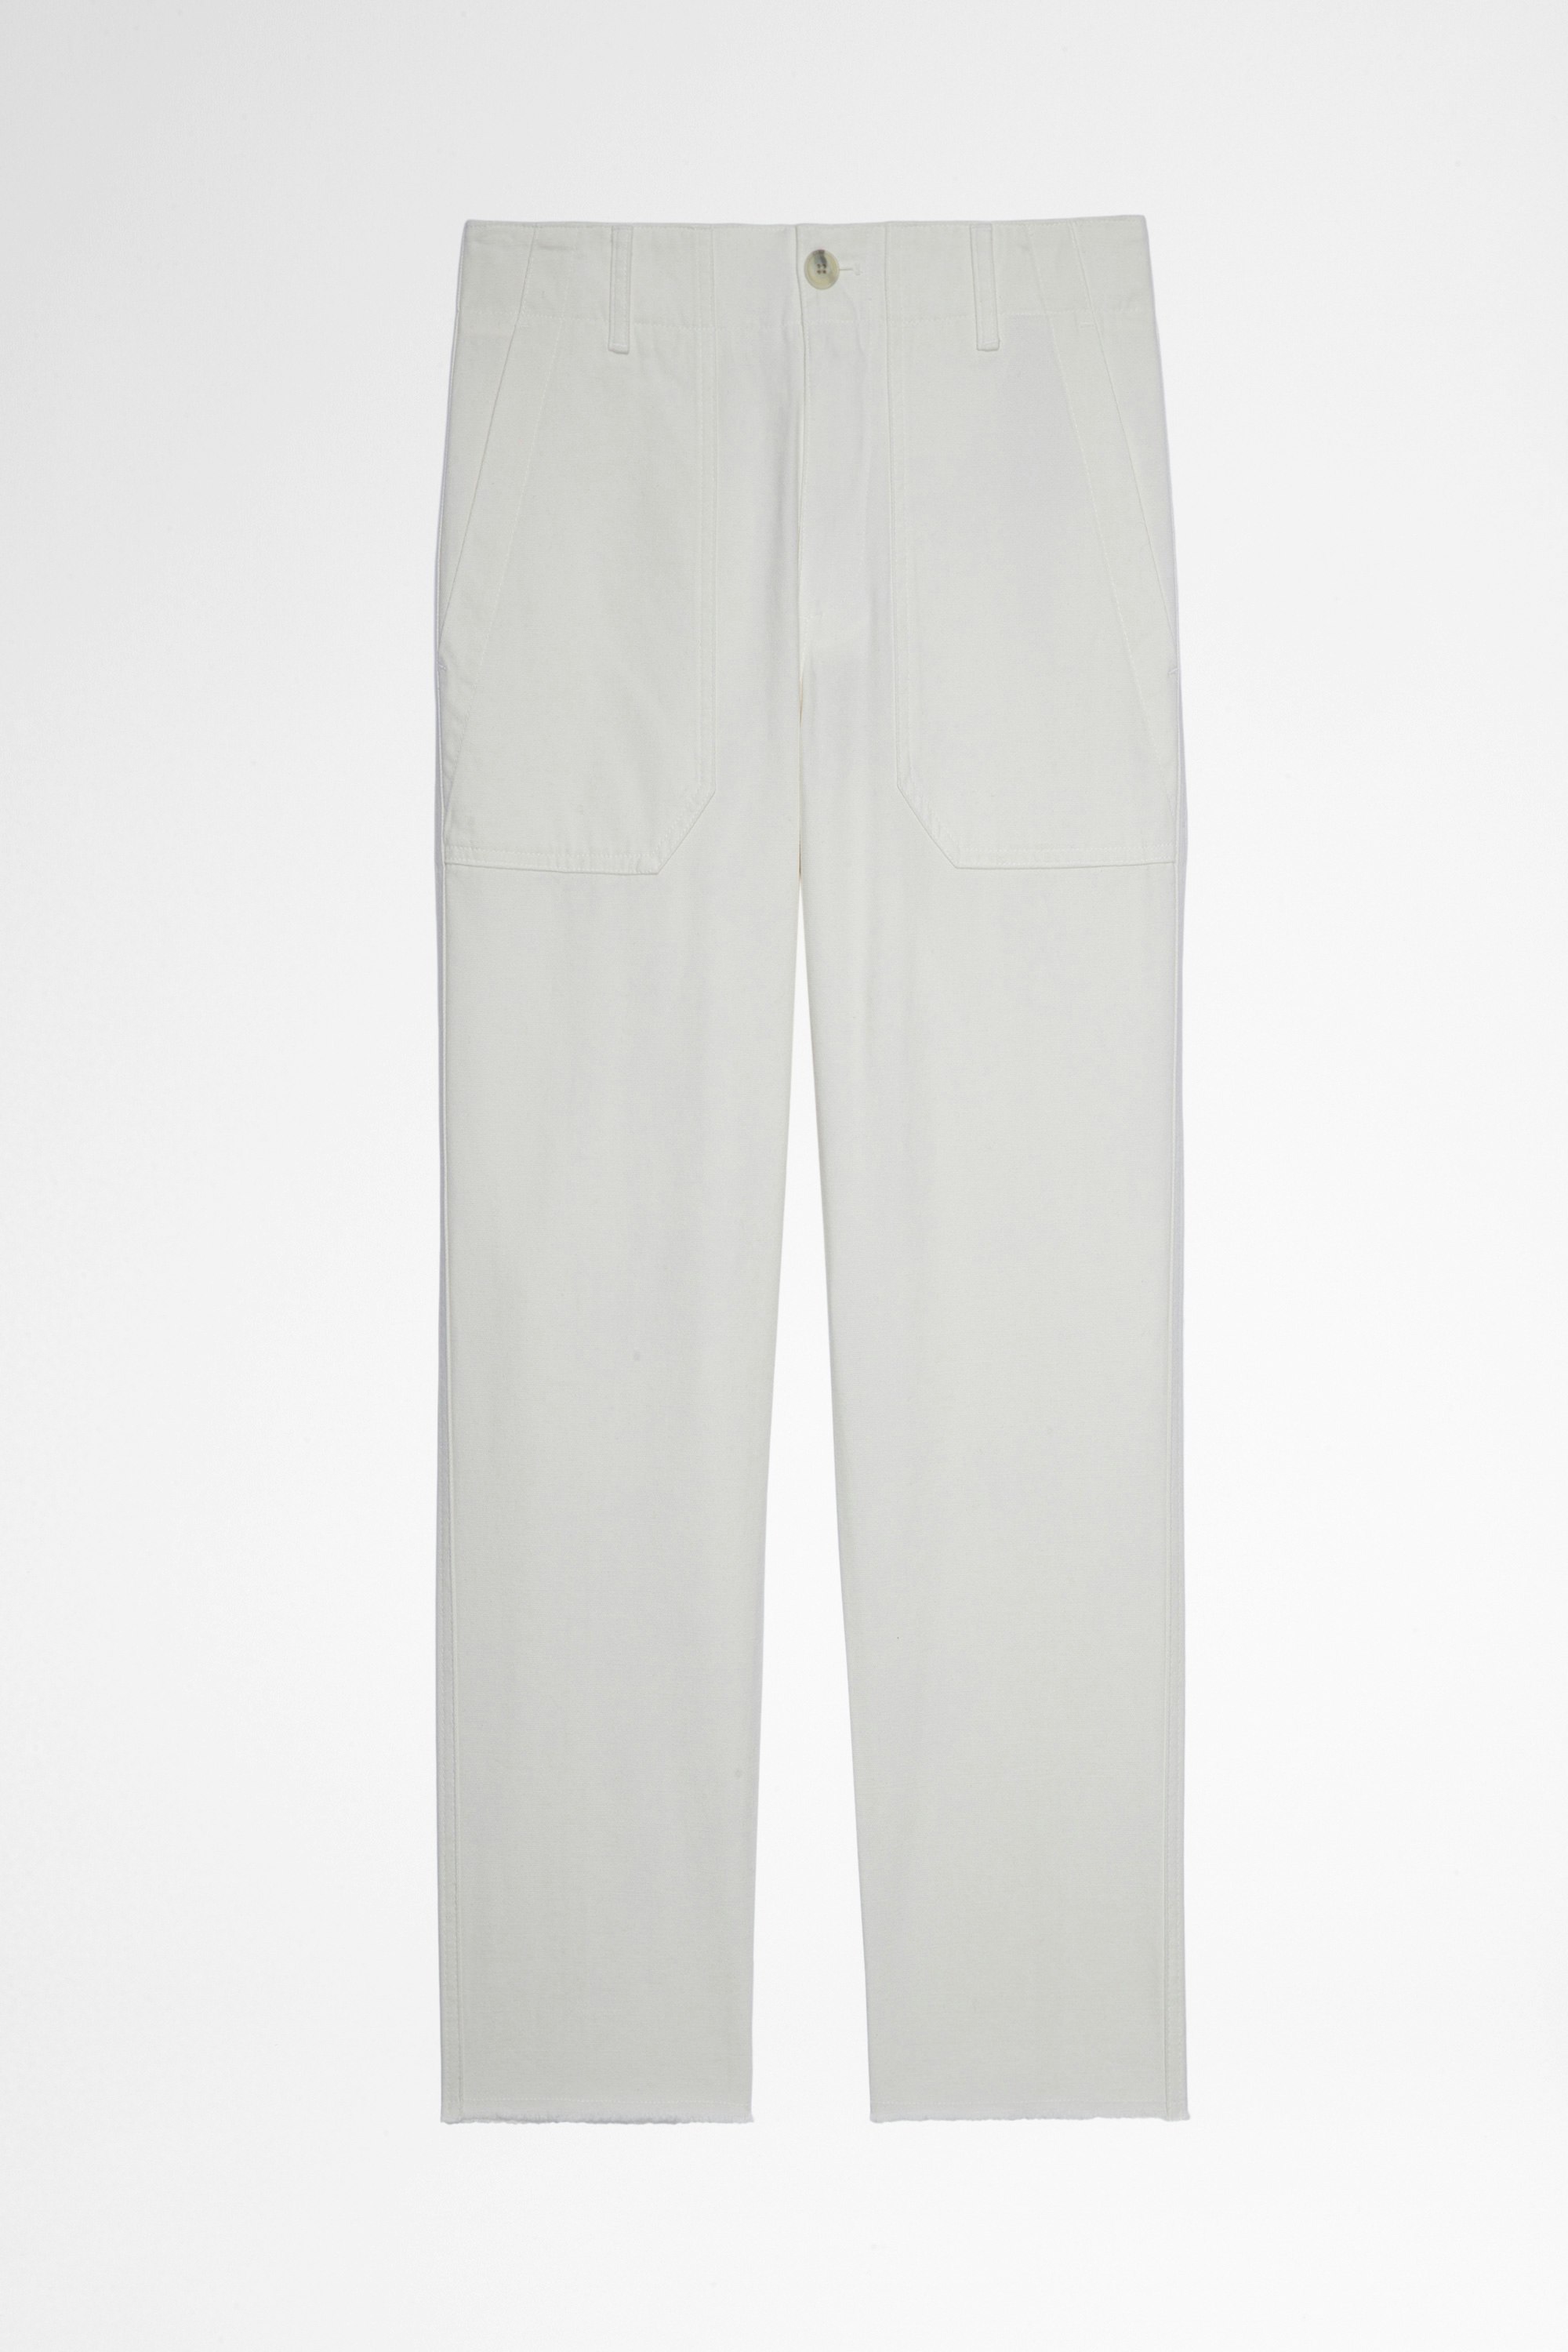 Pantalon Projet Pantalon 7/8 en coton blanc Femme